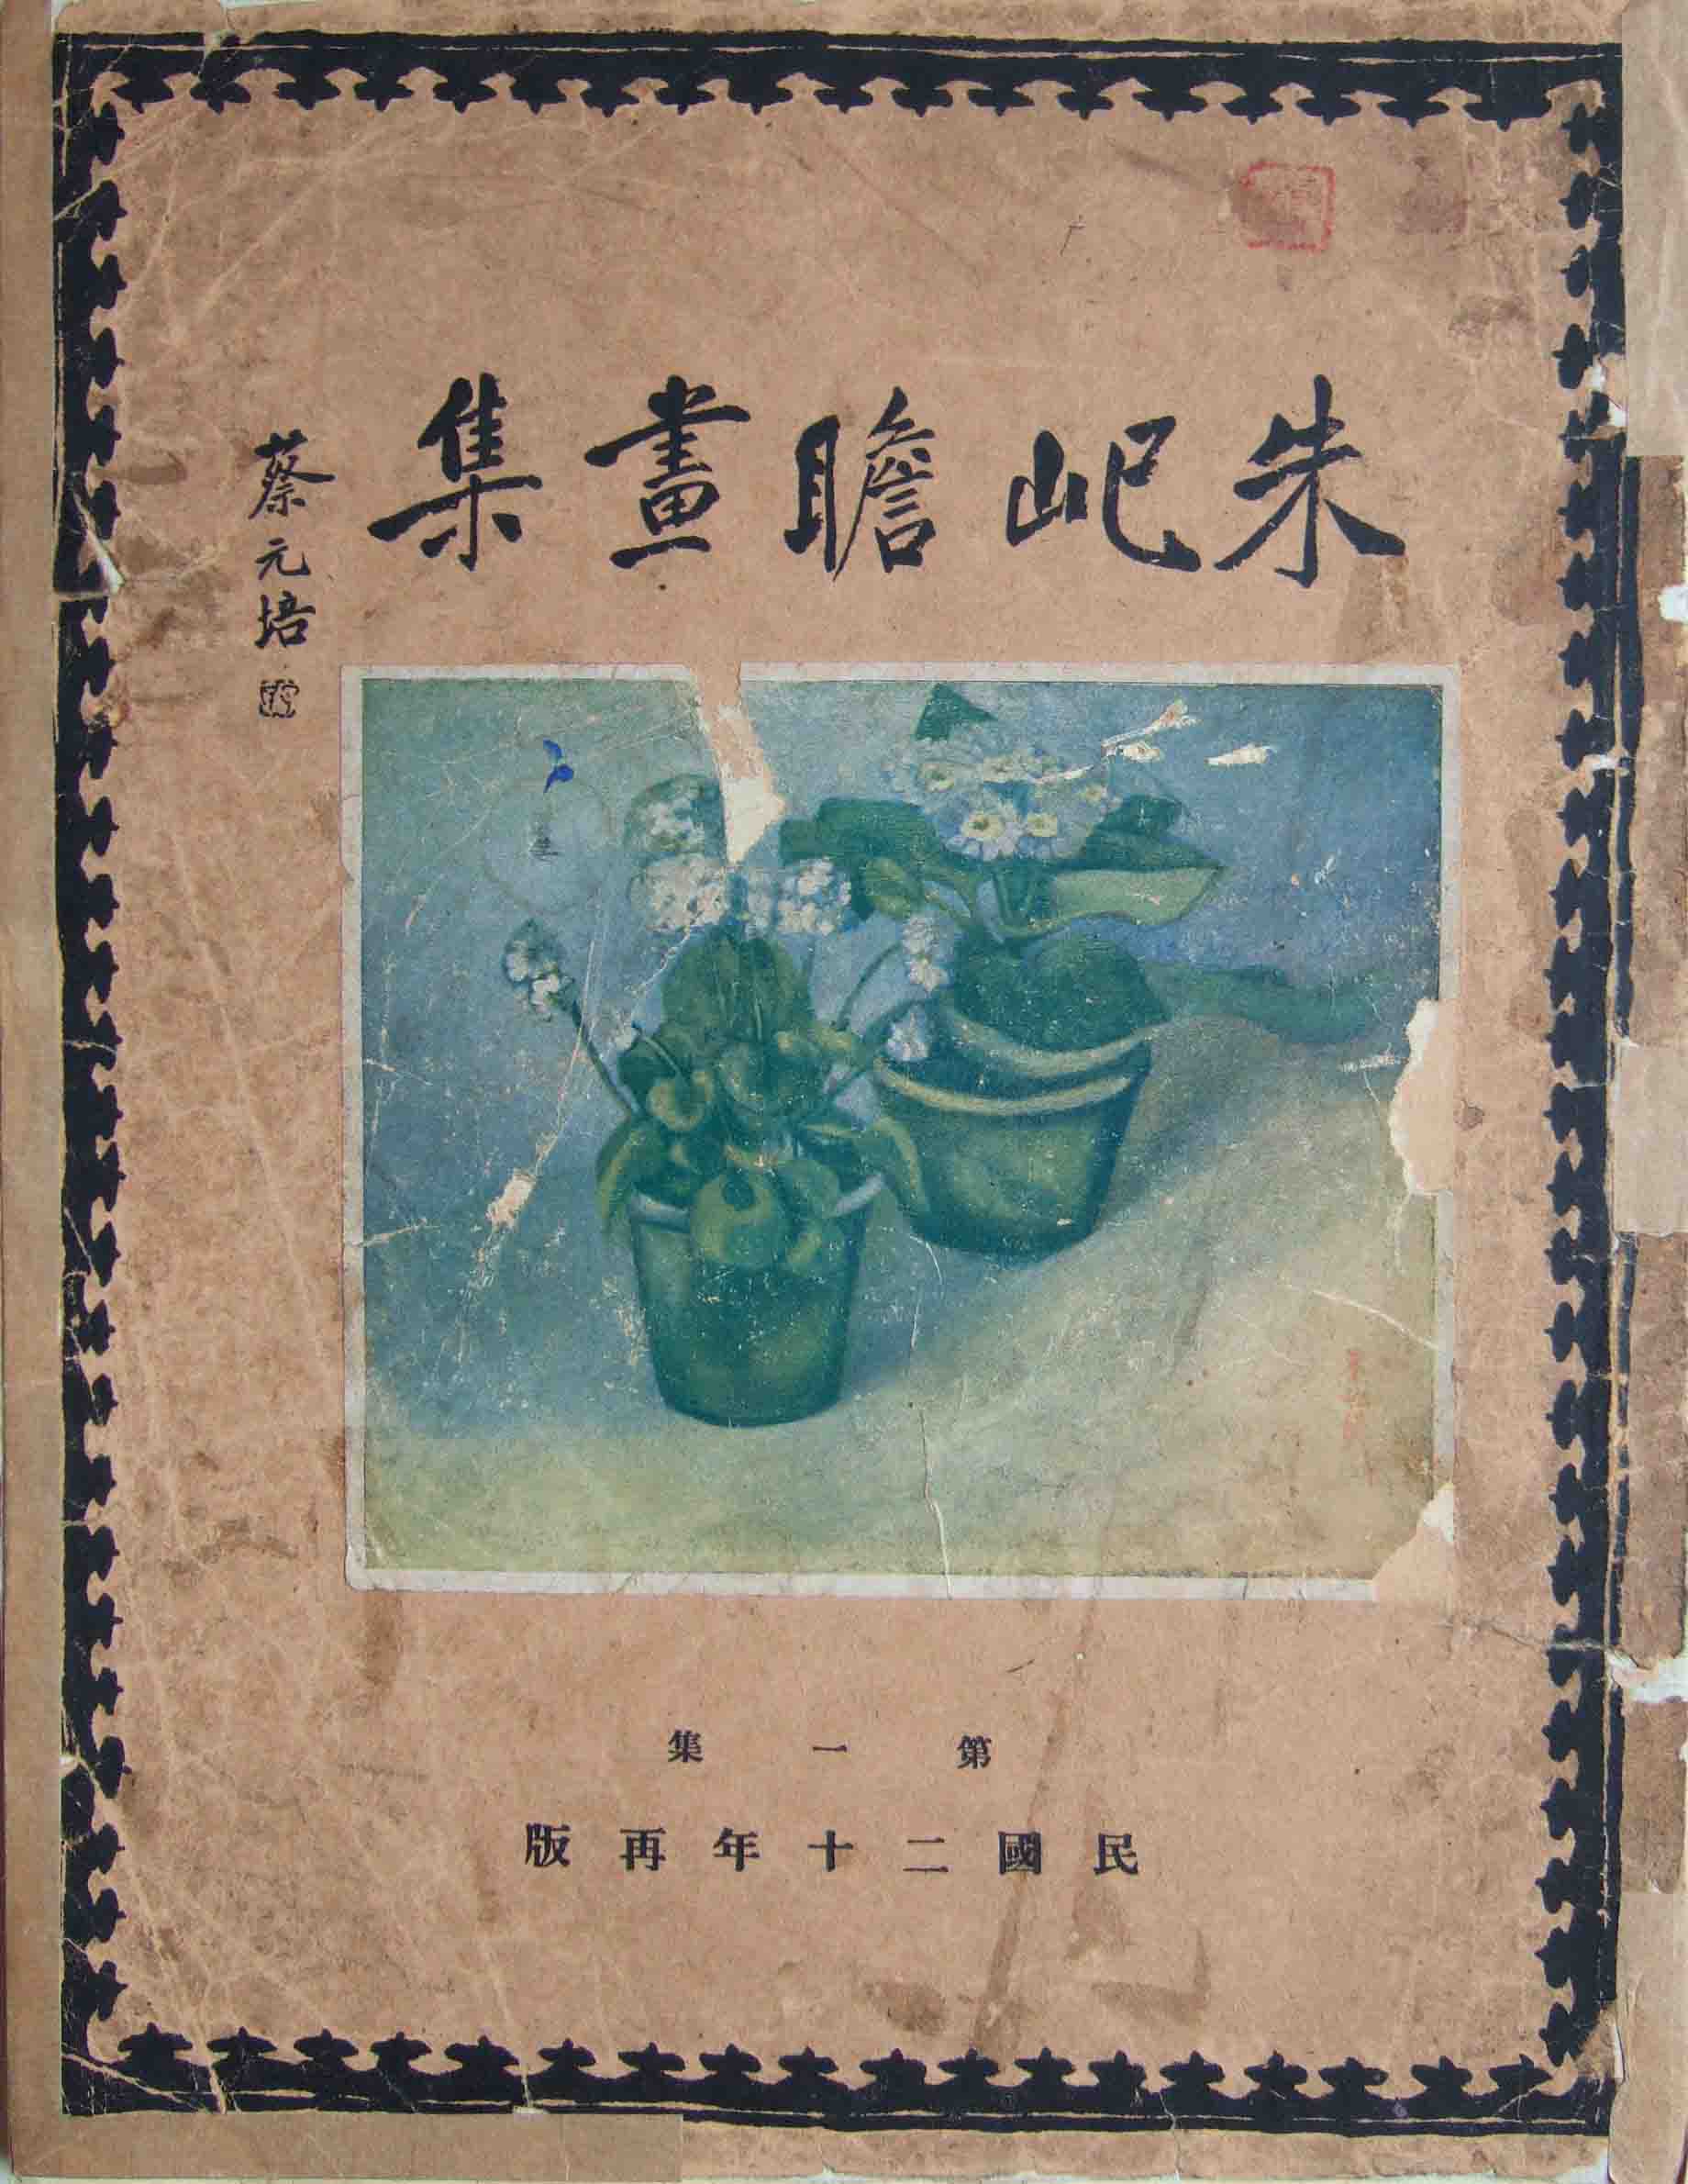 1930 《朱屺瞻画集》蔡元培题字，由艺苑真赏社出版发行